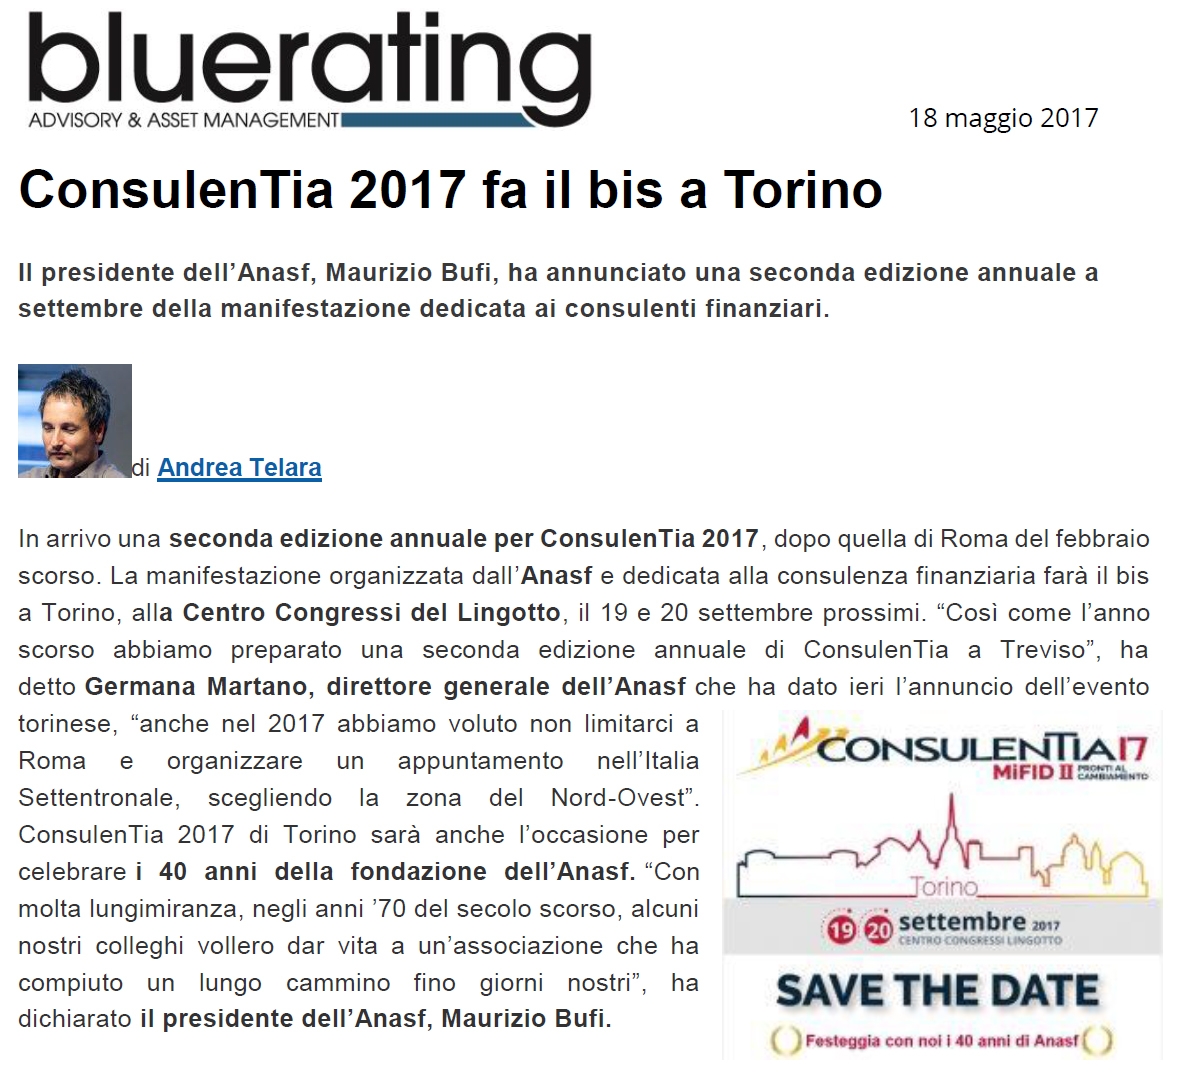 ConsulenTia 2017 fa il bis a Torino